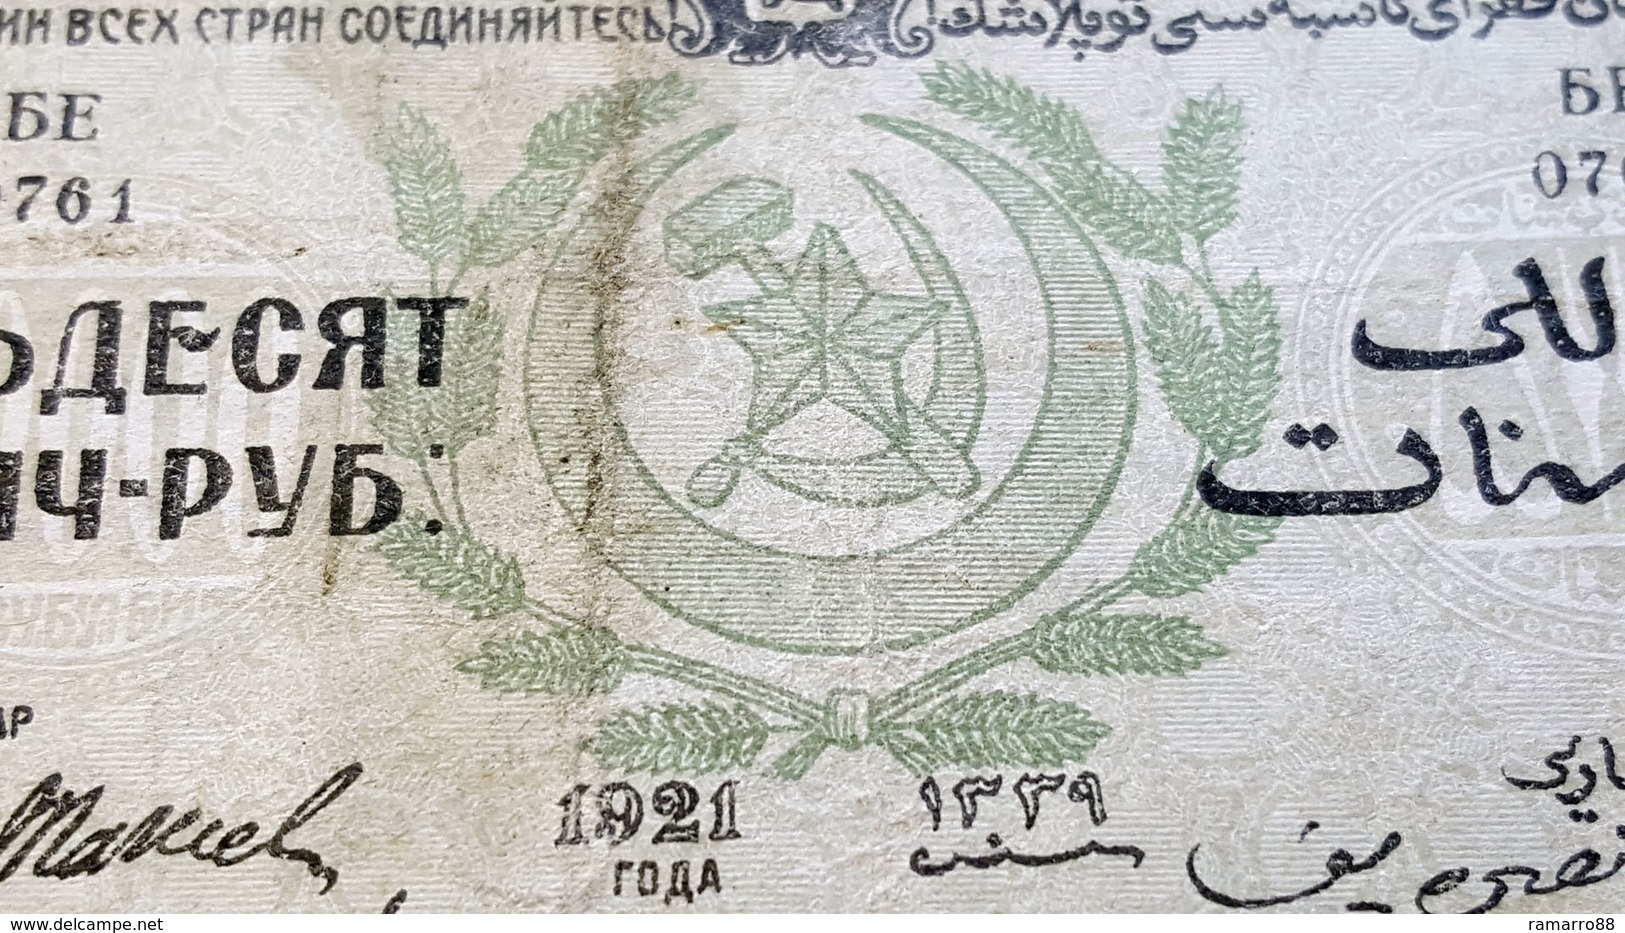 Russia / Transcaucasia / Azerbaijian 50000 Rubles 1921 pS716 VG~F